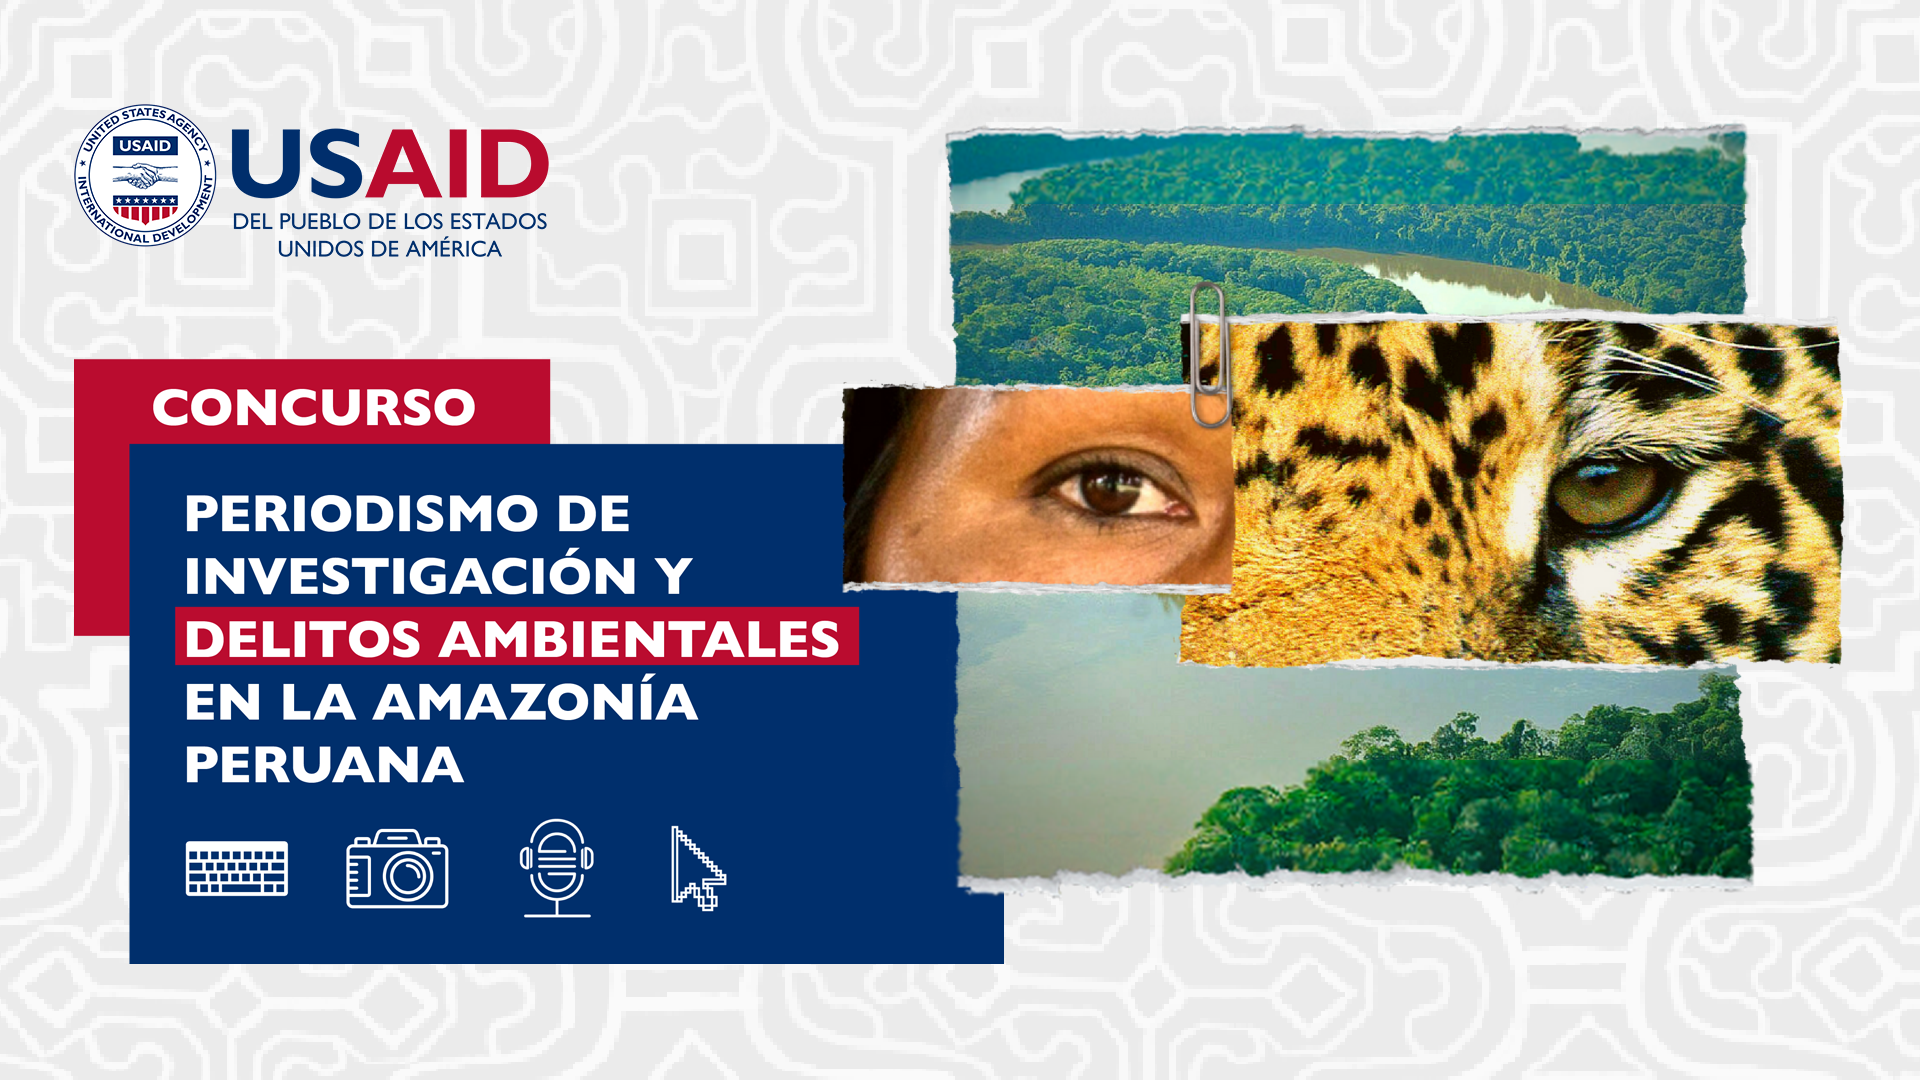 fotocomposición concurso periodismo y amazonía peruana: hay un logo de usaid y un collage con el ojo de una persona, de un jaguar y un río